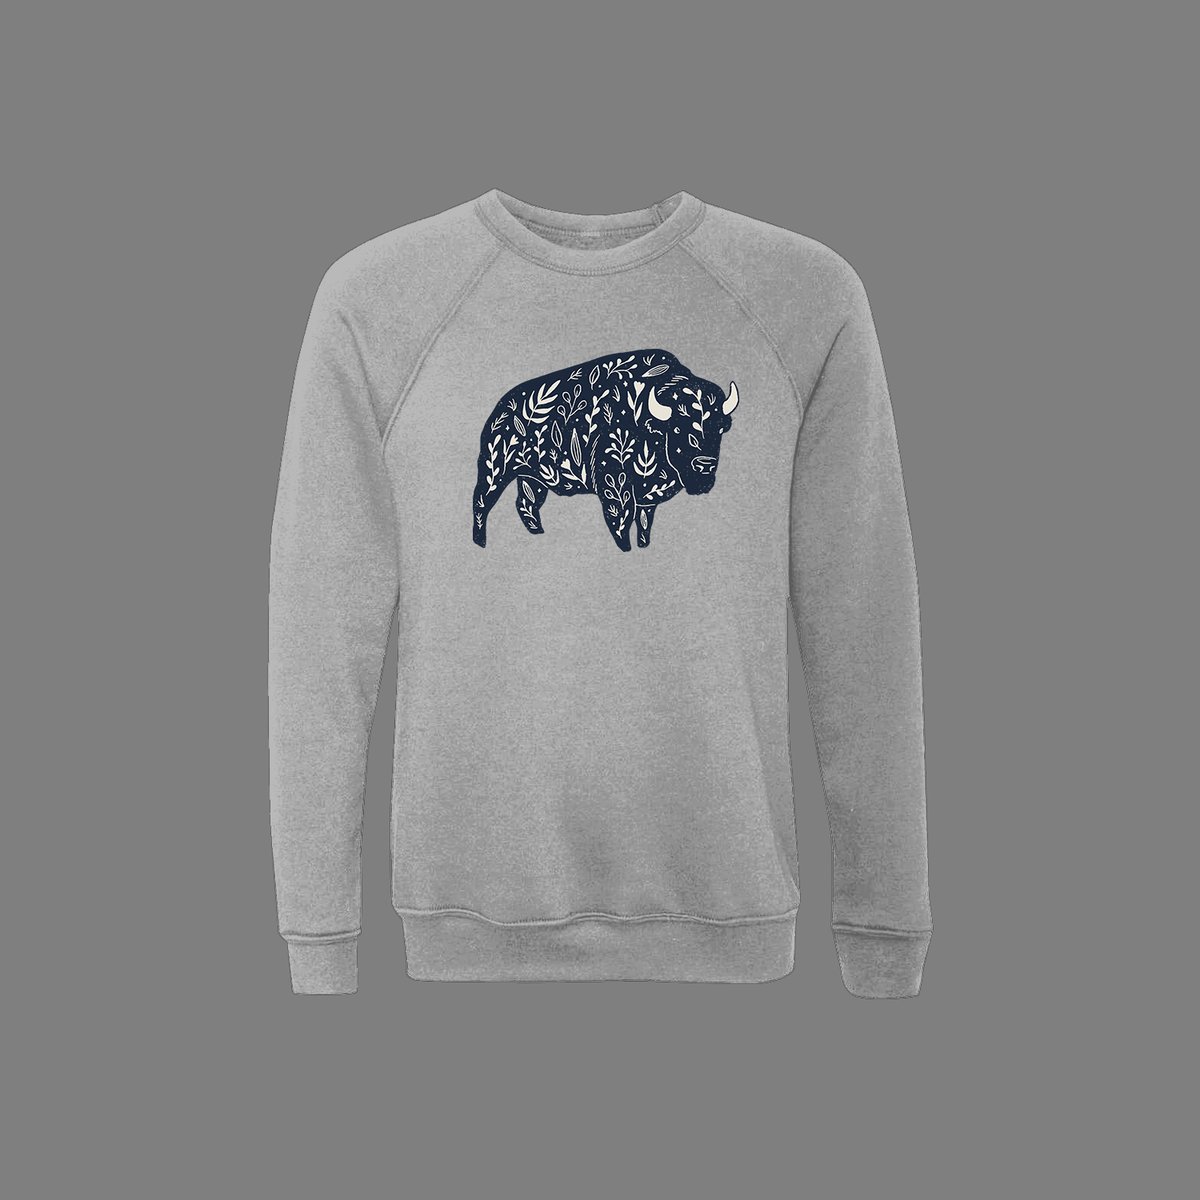 Image of Grey bison sweatshirt